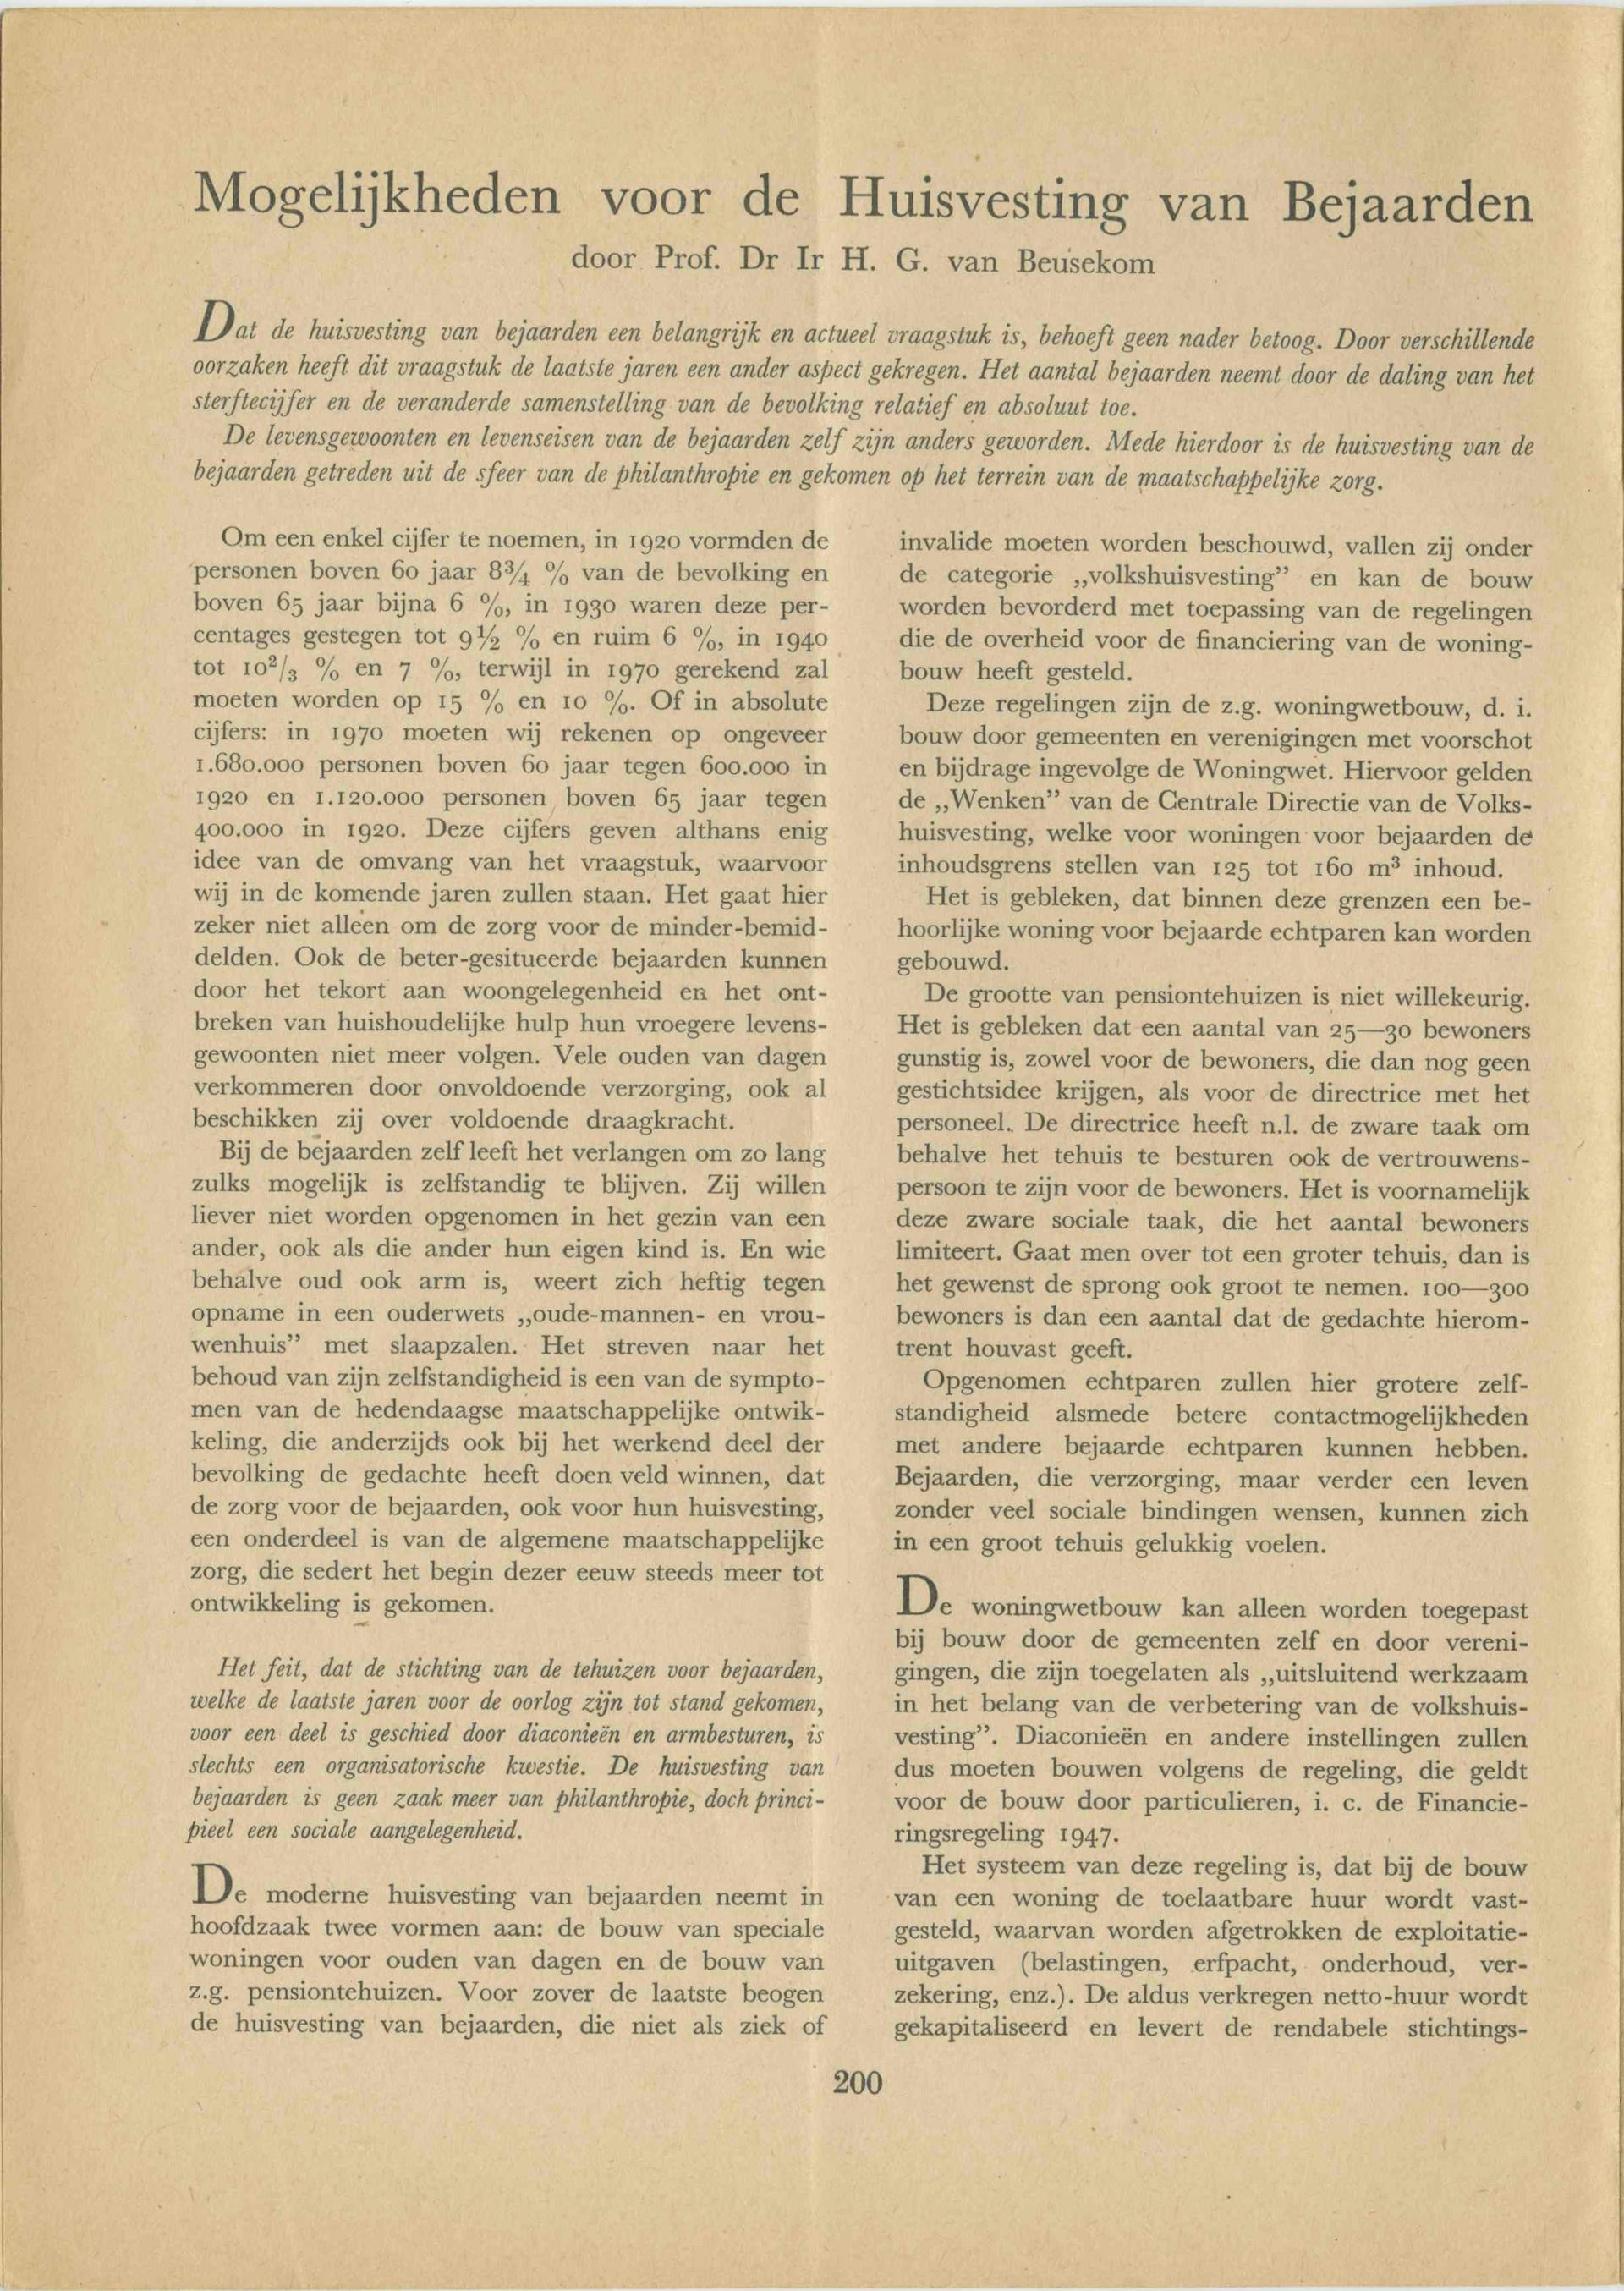  H.G. van Beusekom, ‘Mogelijkheden voor de huisvesting van bejaarden ‘. Tijdschrift voor Maatschappelijk Werk, 1948. Collectie Het Nieuwe Instituut, TIJX d39-c 